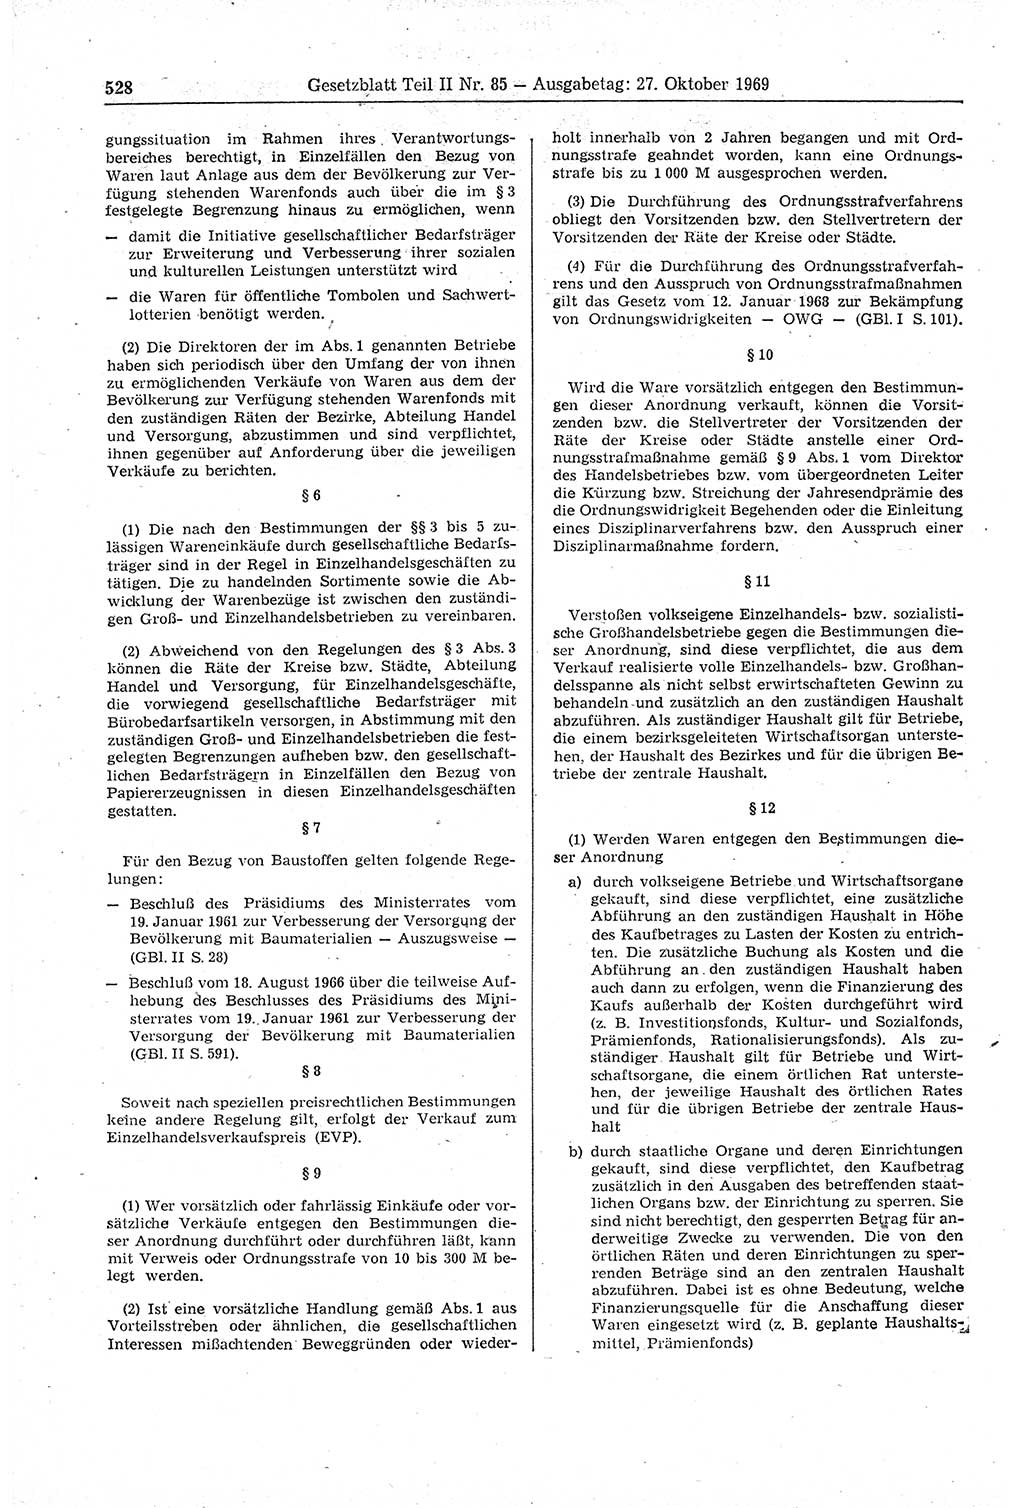 Gesetzblatt (GBl.) der Deutschen Demokratischen Republik (DDR) Teil ⅠⅠ 1969, Seite 528 (GBl. DDR ⅠⅠ 1969, S. 528)